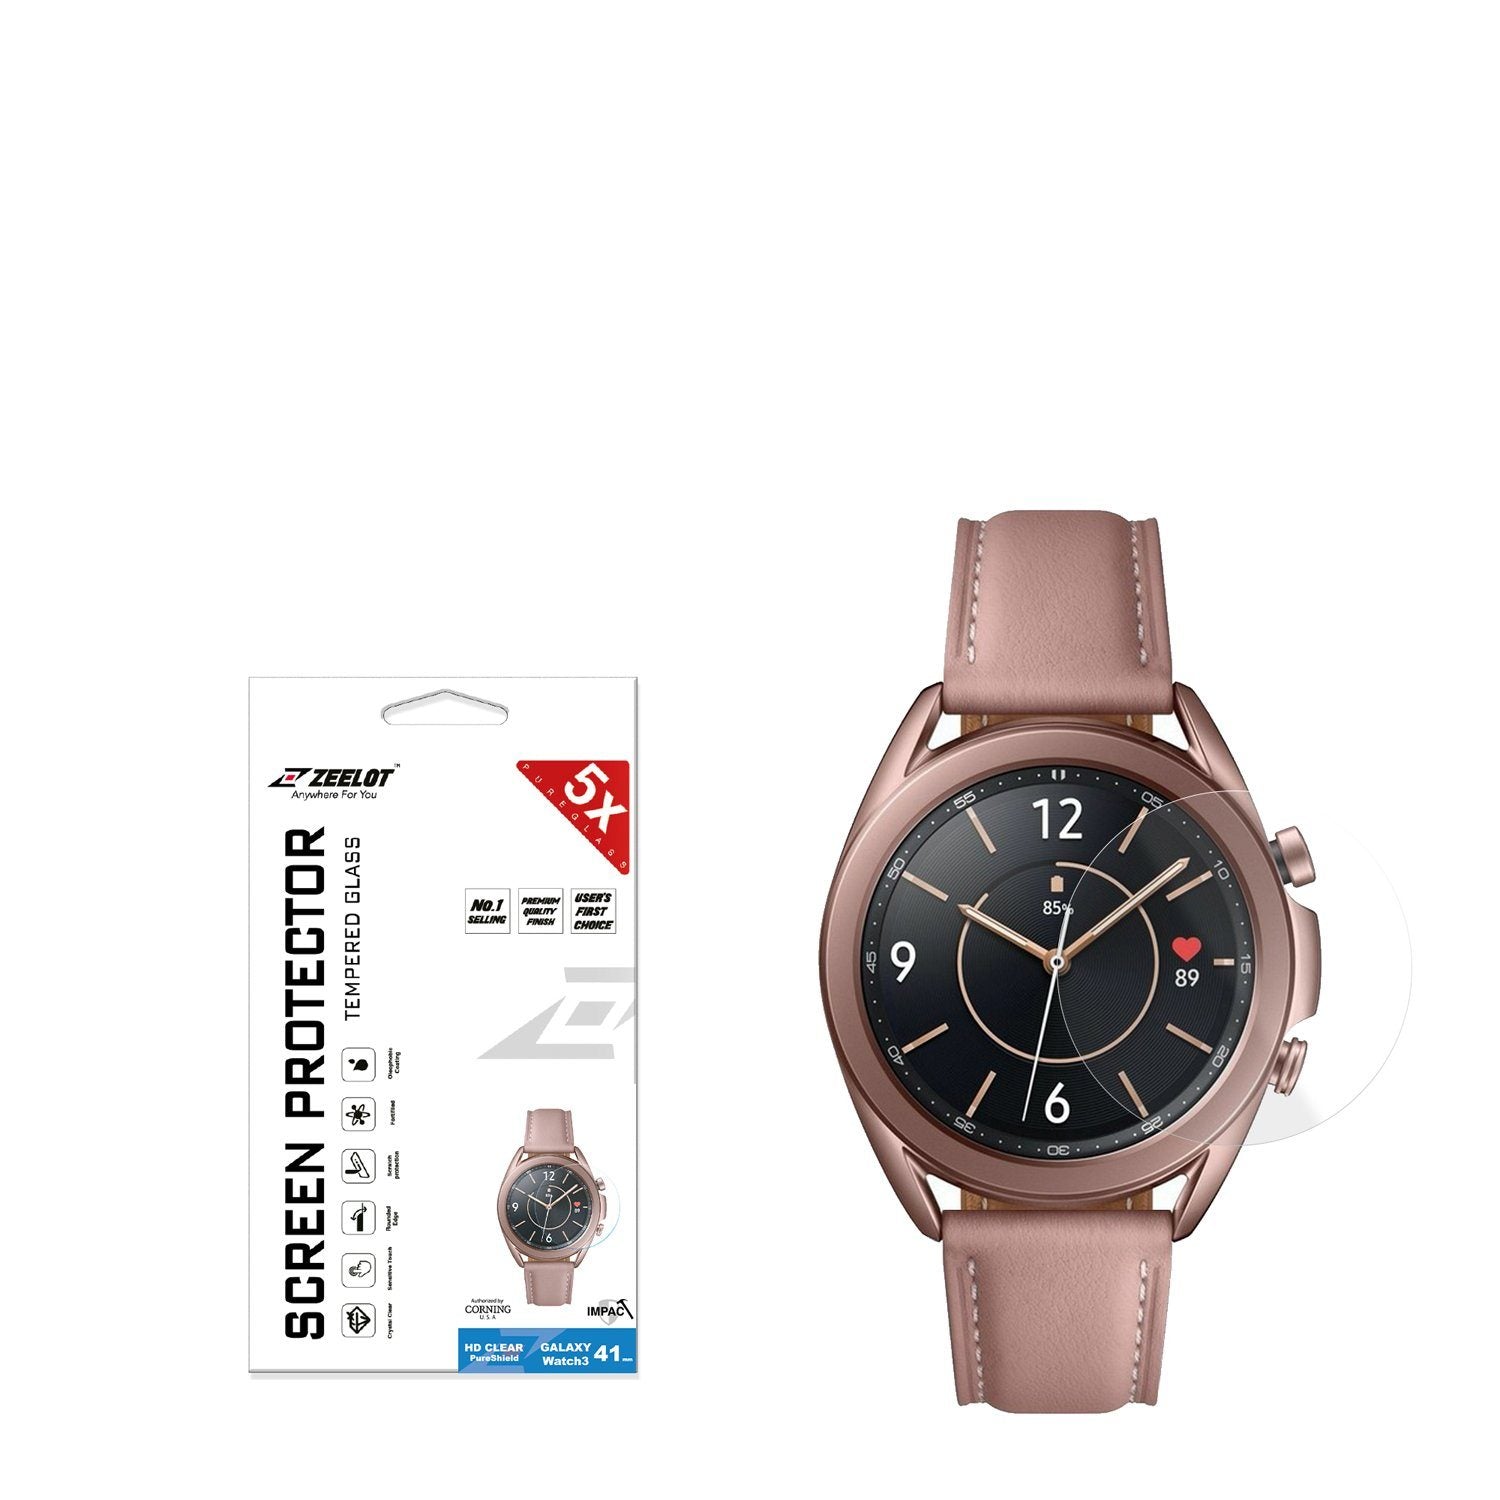 ZEELOT PureShield 2.5D Tempered Glass Screen Protector for Samsung Galaxy Watch 3 41mm (2Pcs), Clear Default ZEELOT 